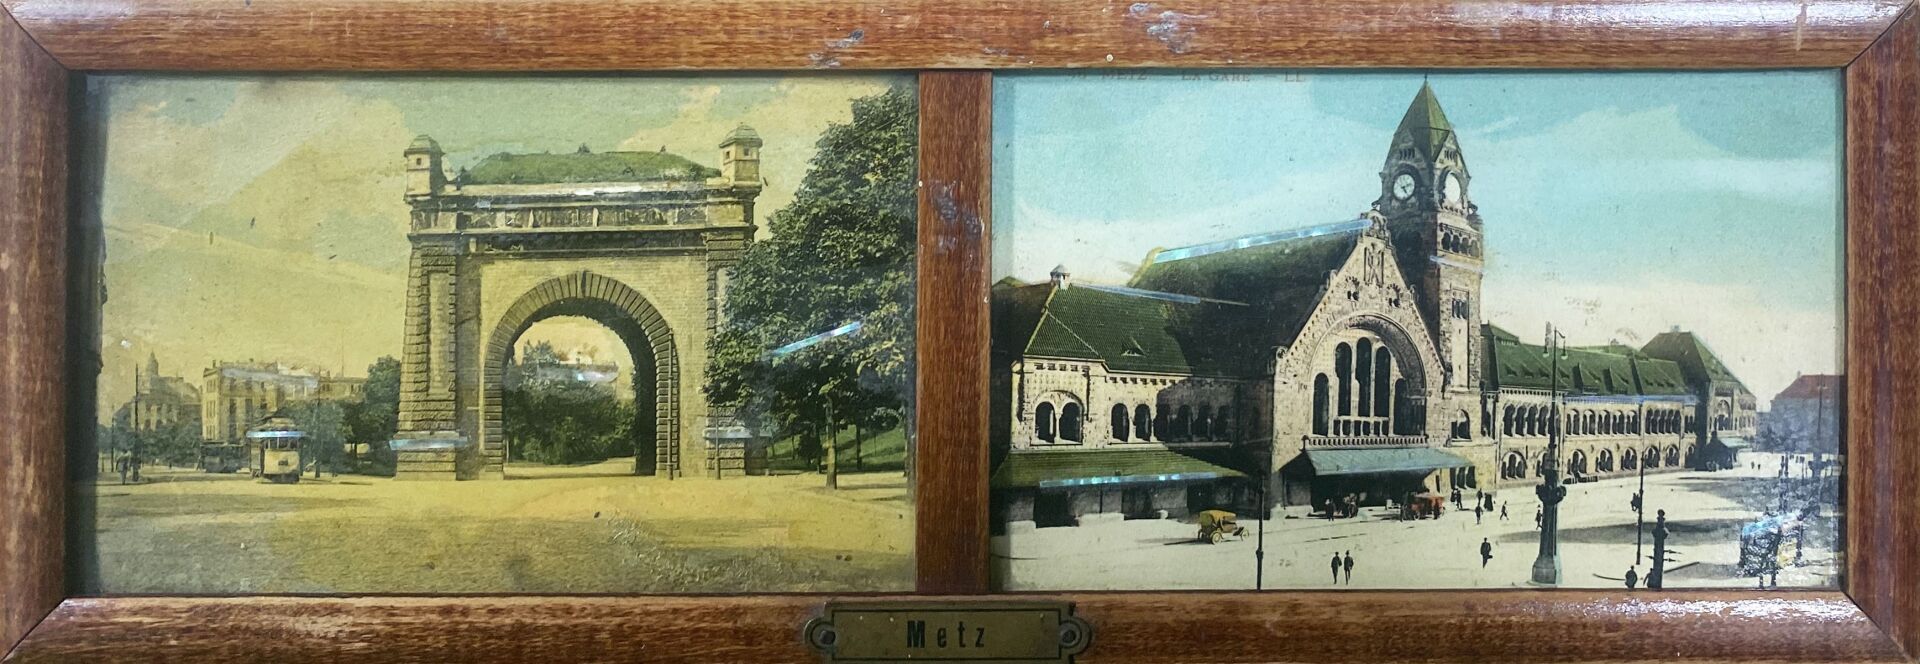 Null METZ - L'Arco di Trionfo / La stazione ferroviaria

Due fissi sotto vetro

&hellip;